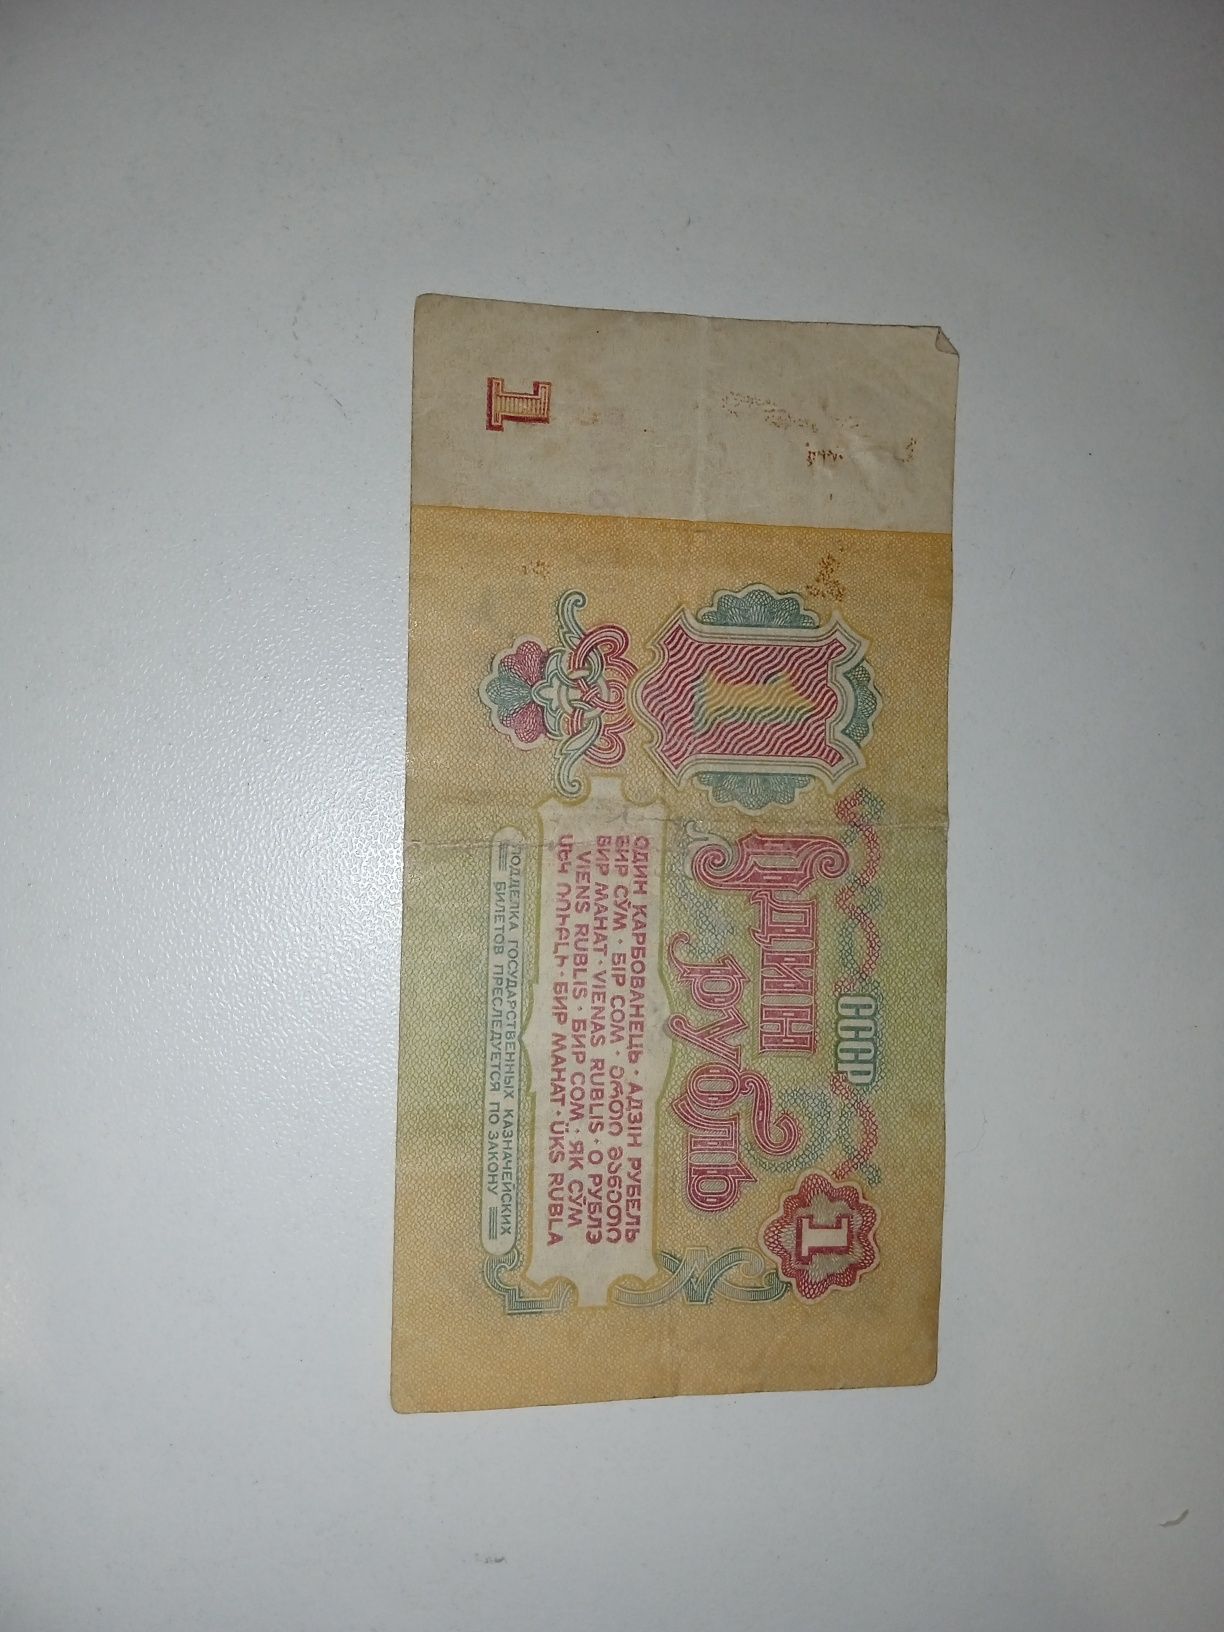 Коллекционнер 1 рубль 1961 года продаю за 10,000 тг